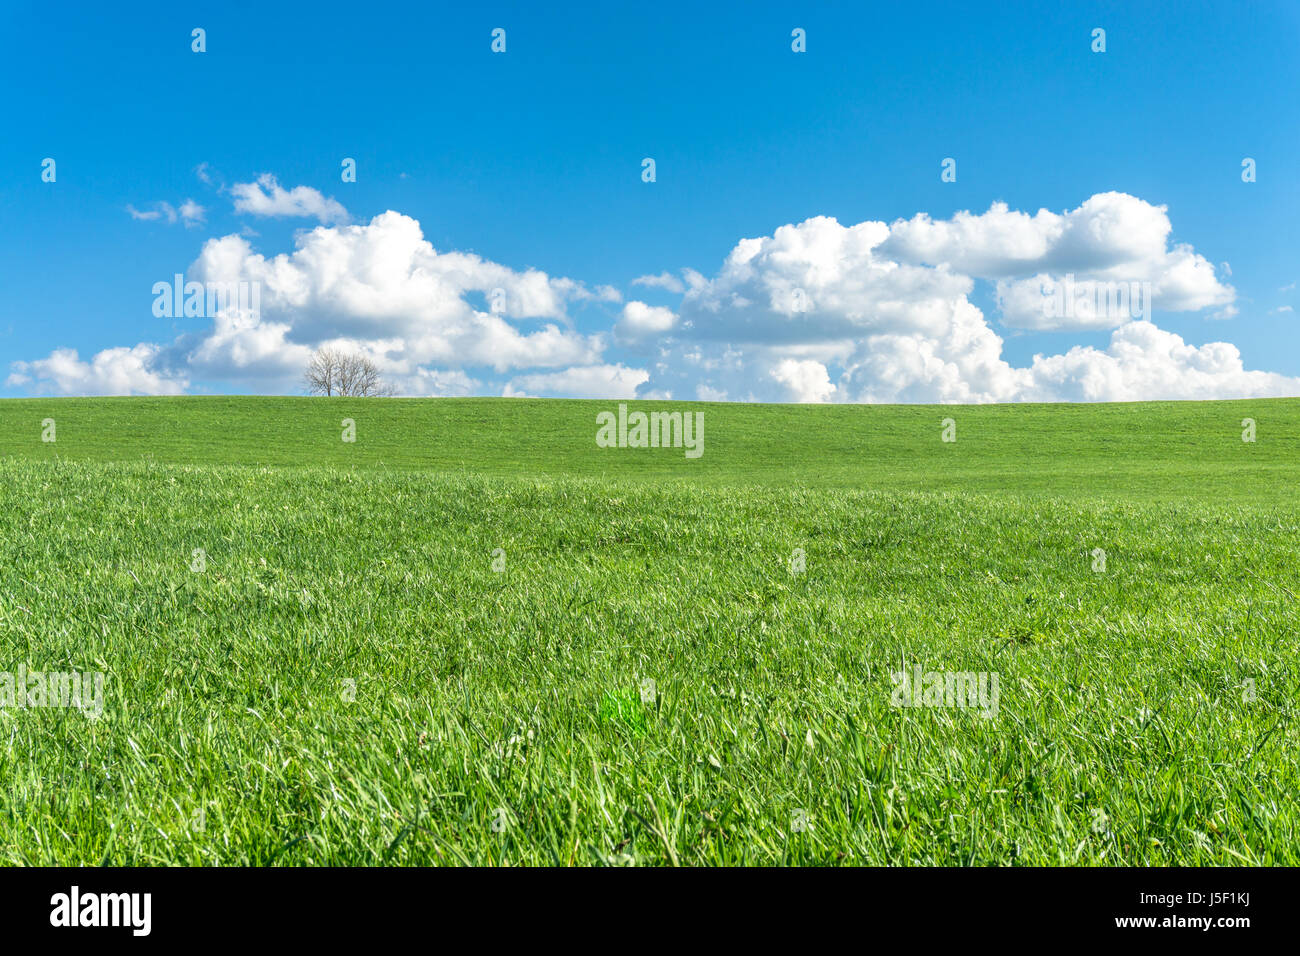 Grüne Rasenfläche, blauer Himmel, weiße Wolken und ein Baum. Stockfoto